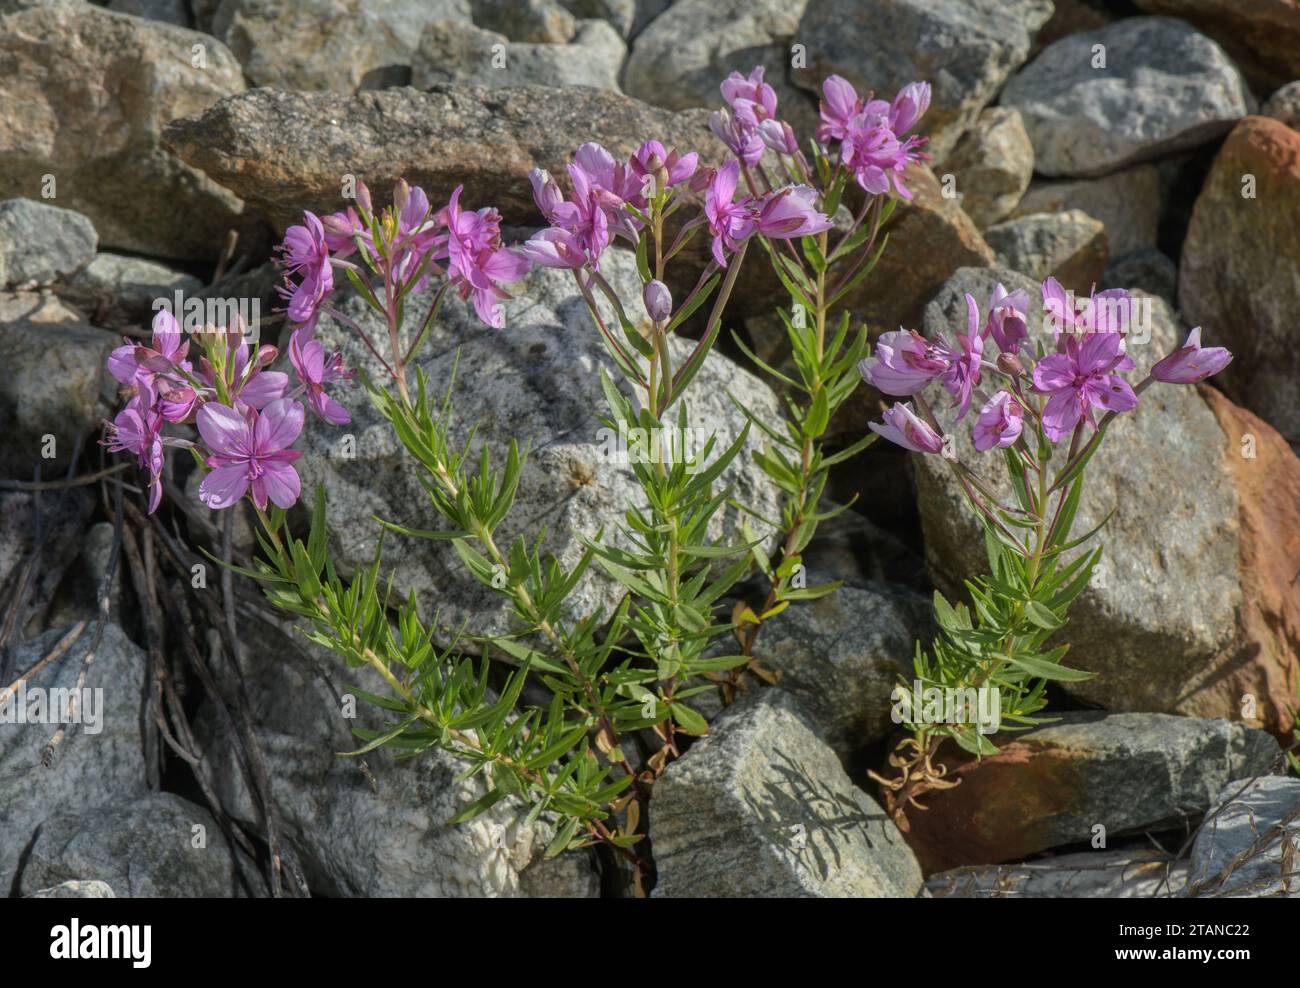 Alpine Willowherb, Epilobium fleischeri, in flower on alpine scree. French Alps. Stock Photo